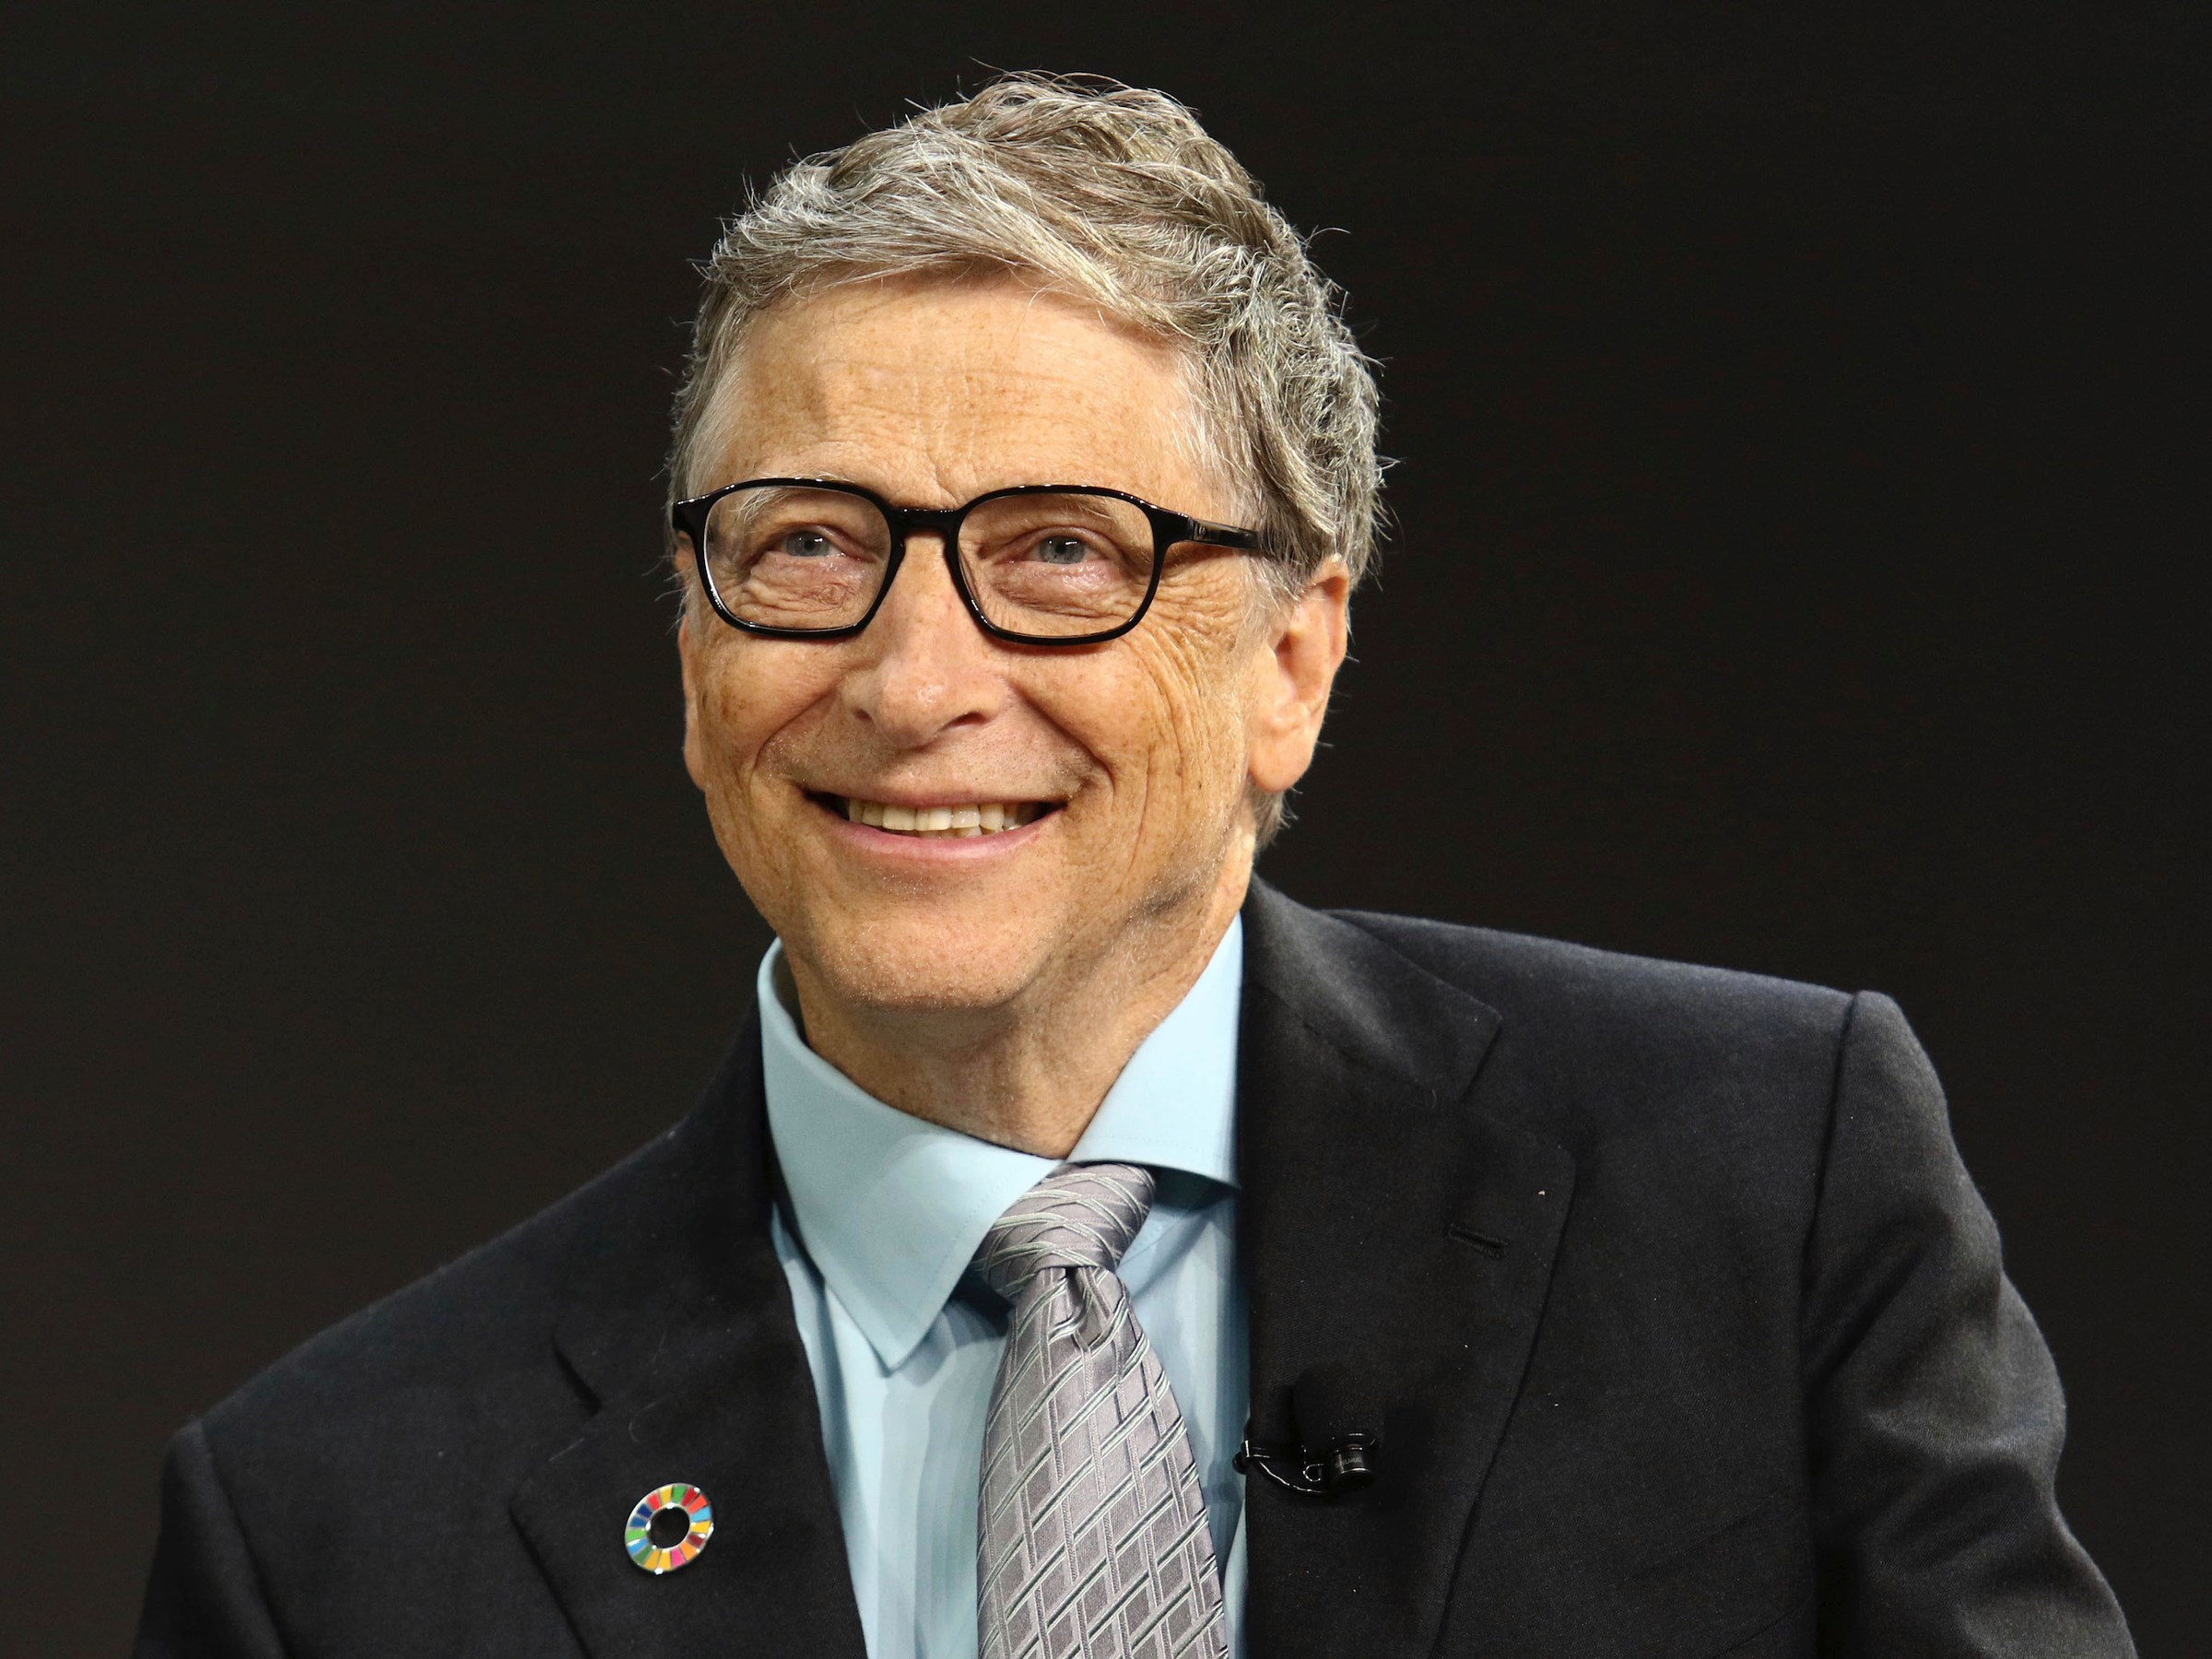 Bill Gates açıkladı: Android'i tercih ediyorum, Bitcoin ilgi alanımda değil